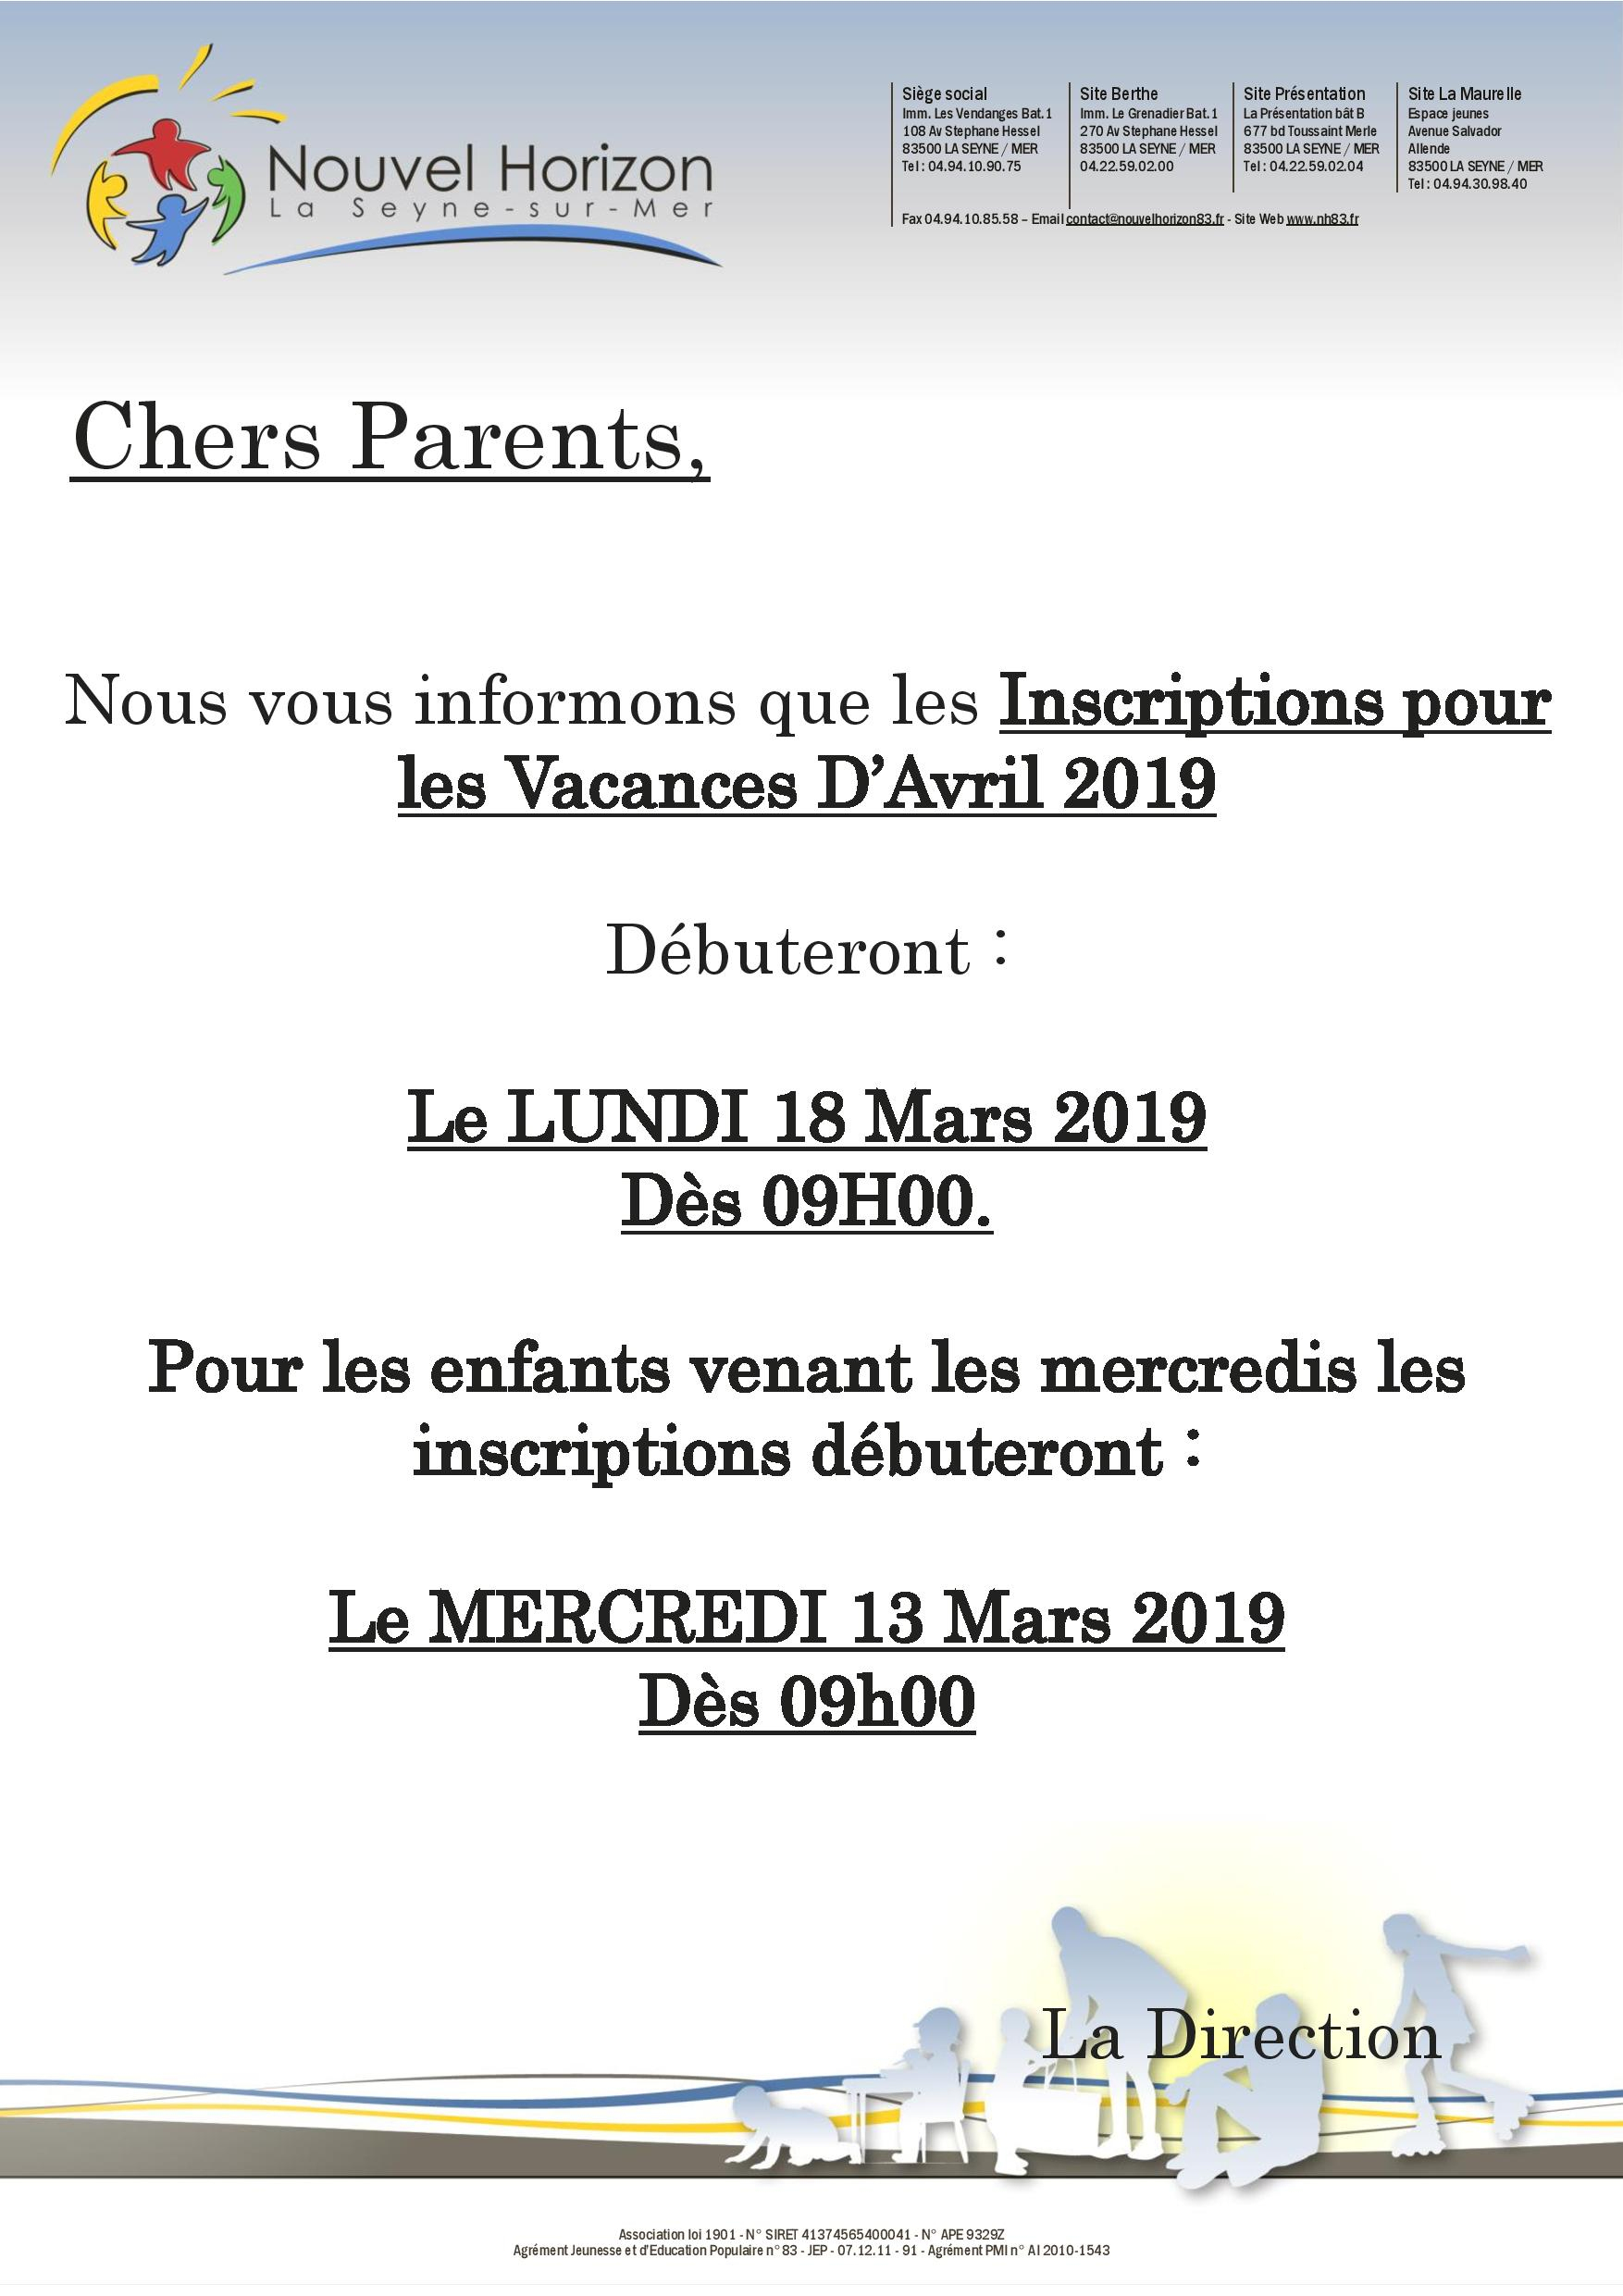 Inscription Pour Les Vacances D'Avril 2019 | Association intérieur Vacances 2019 2019